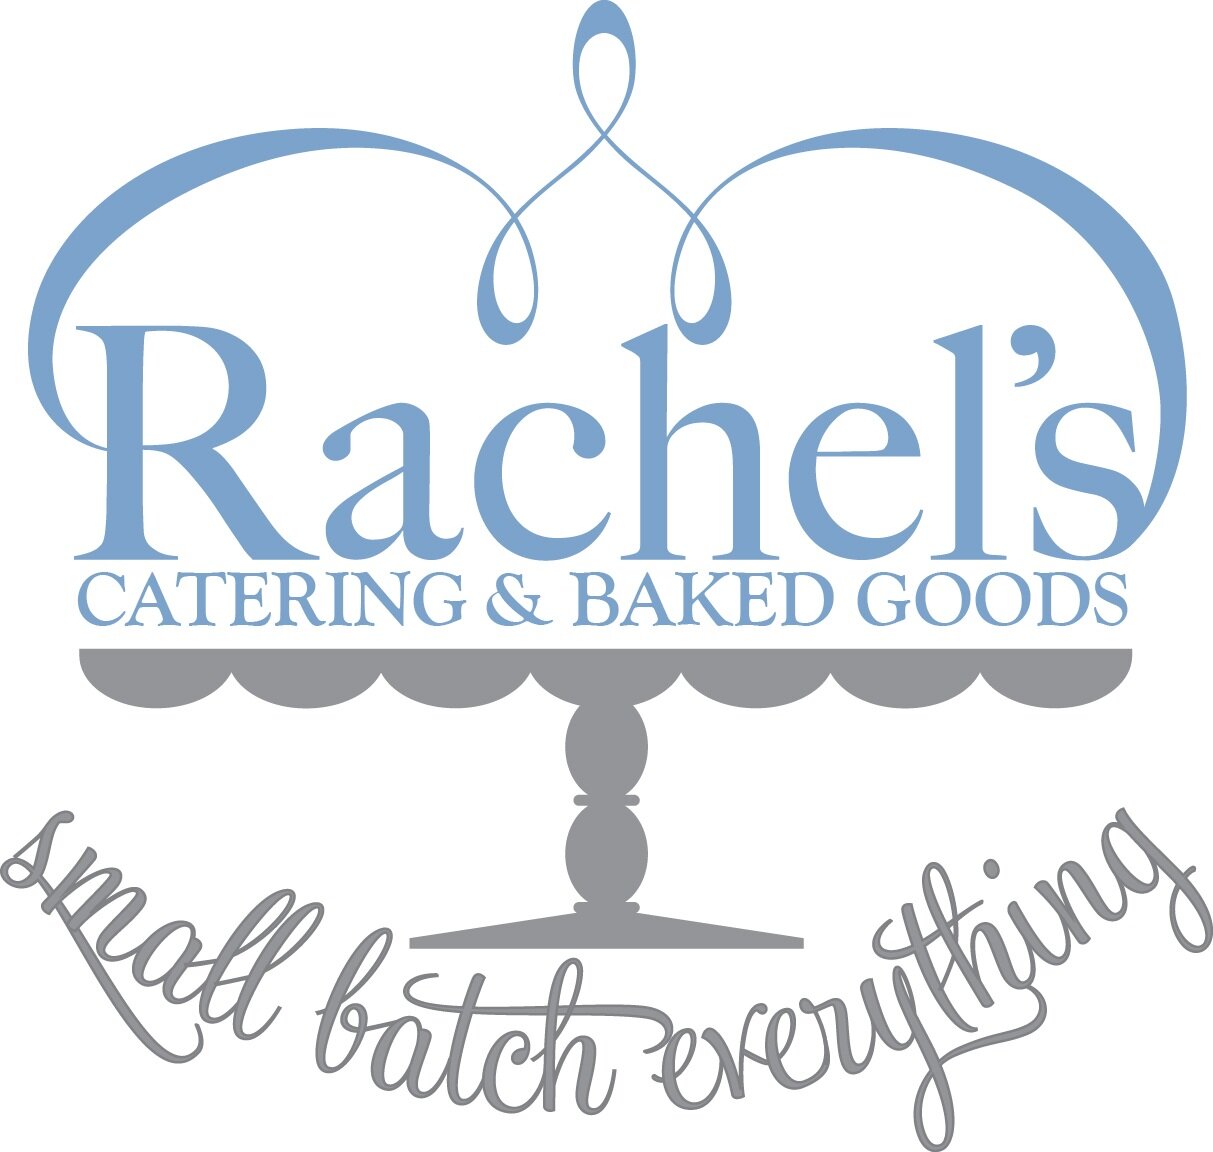 Rachel’s Catering & Baked Goods